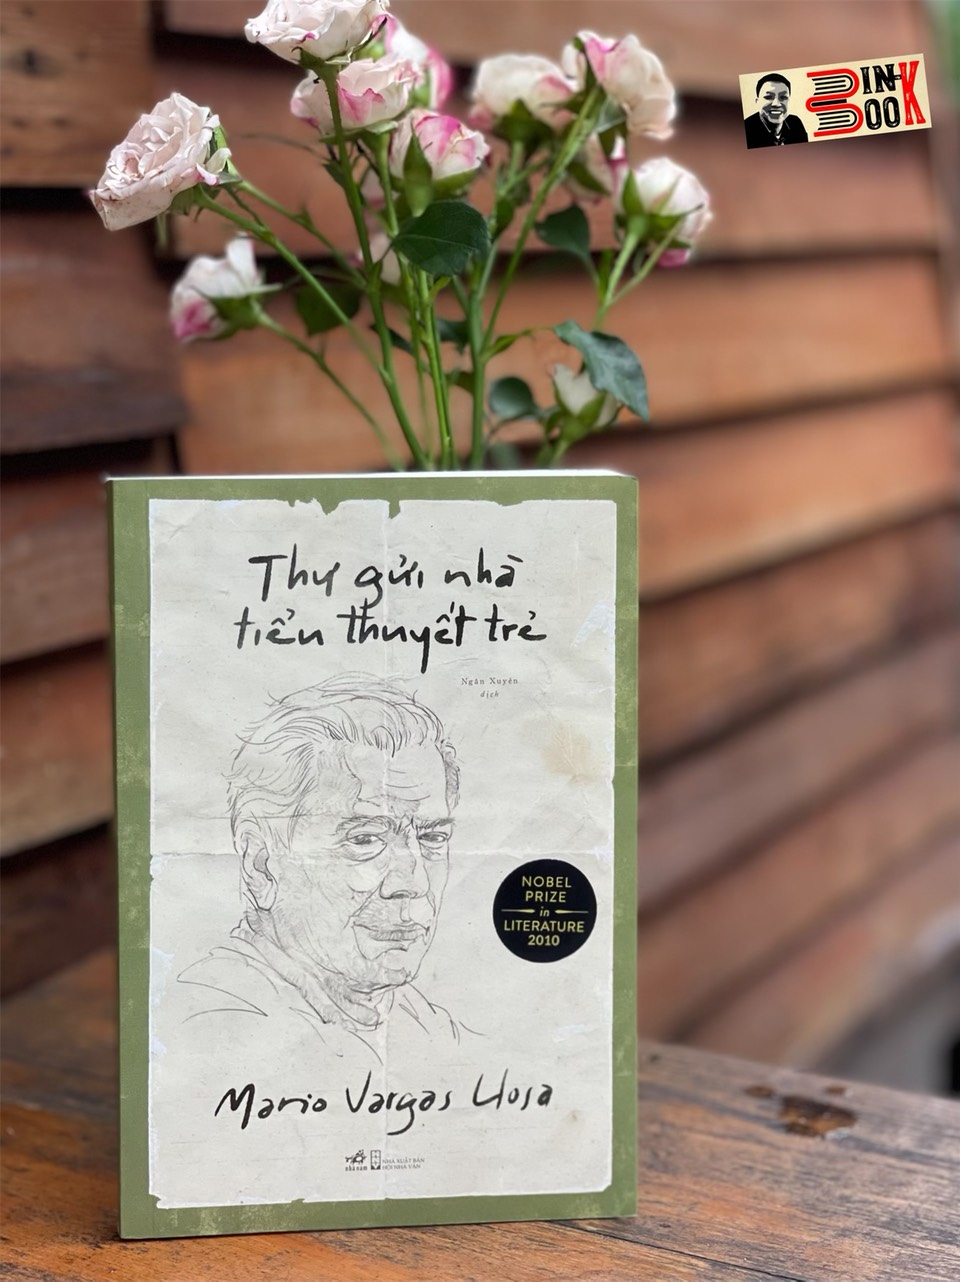 (Chữ ký dịch giả) (Tác giả đoạt giải Nobel Văn chương năm 2010) THƯ GỬI NHÀ TIỂU THUYẾT TRẺ – Mario Vargas Llosa – Ngân Xuyên dịch (tức Phạm Xuân Nguyên) – Nhã Nam – NXB Hội Nhà Văn